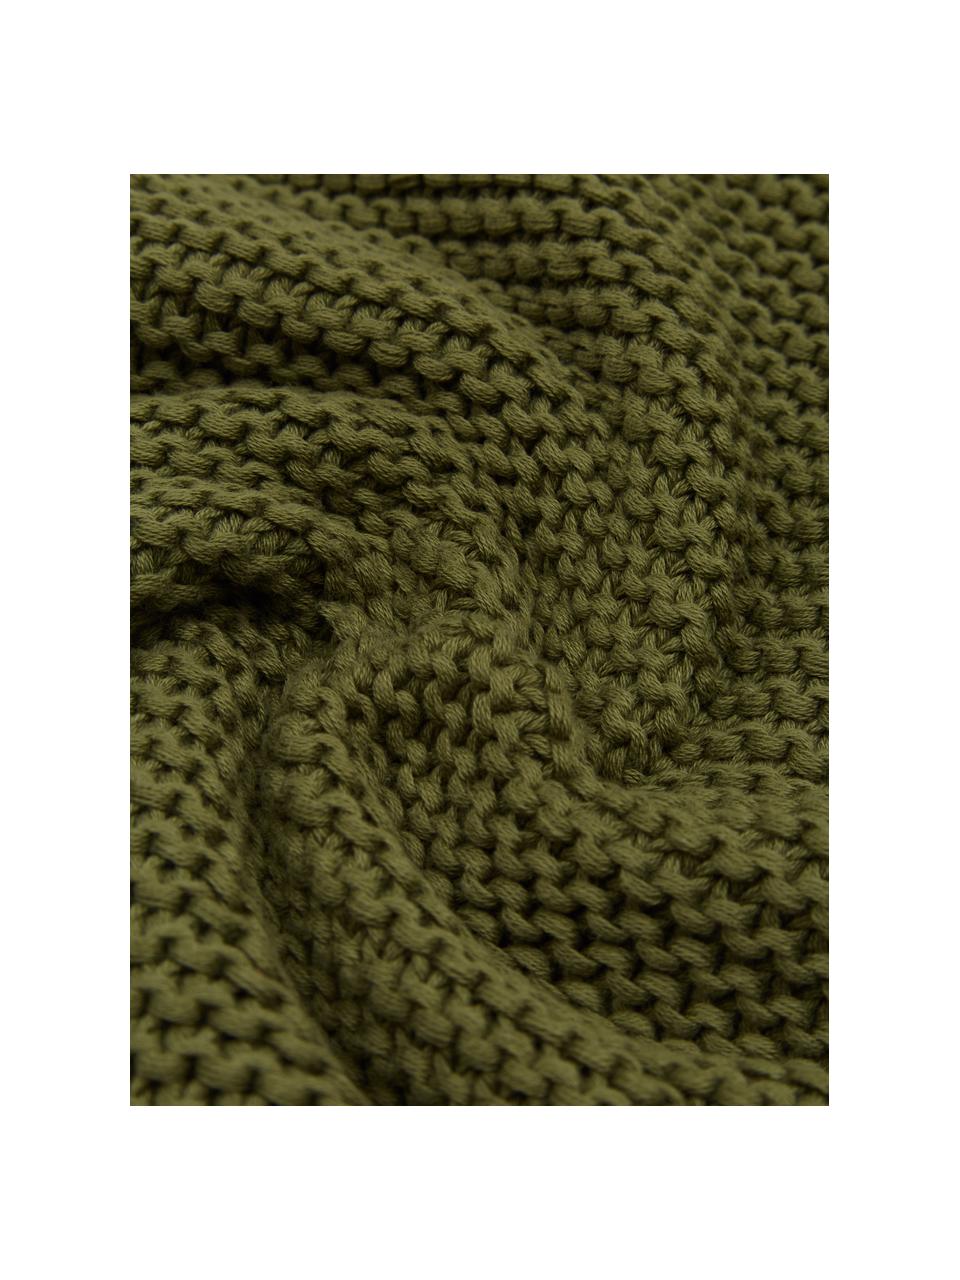 Federa arredo a maglia in cotone organico verde Adalyn, 100% cotone organico certificato GOTS, Verde, Larg. 30 x Lung. 50 cm